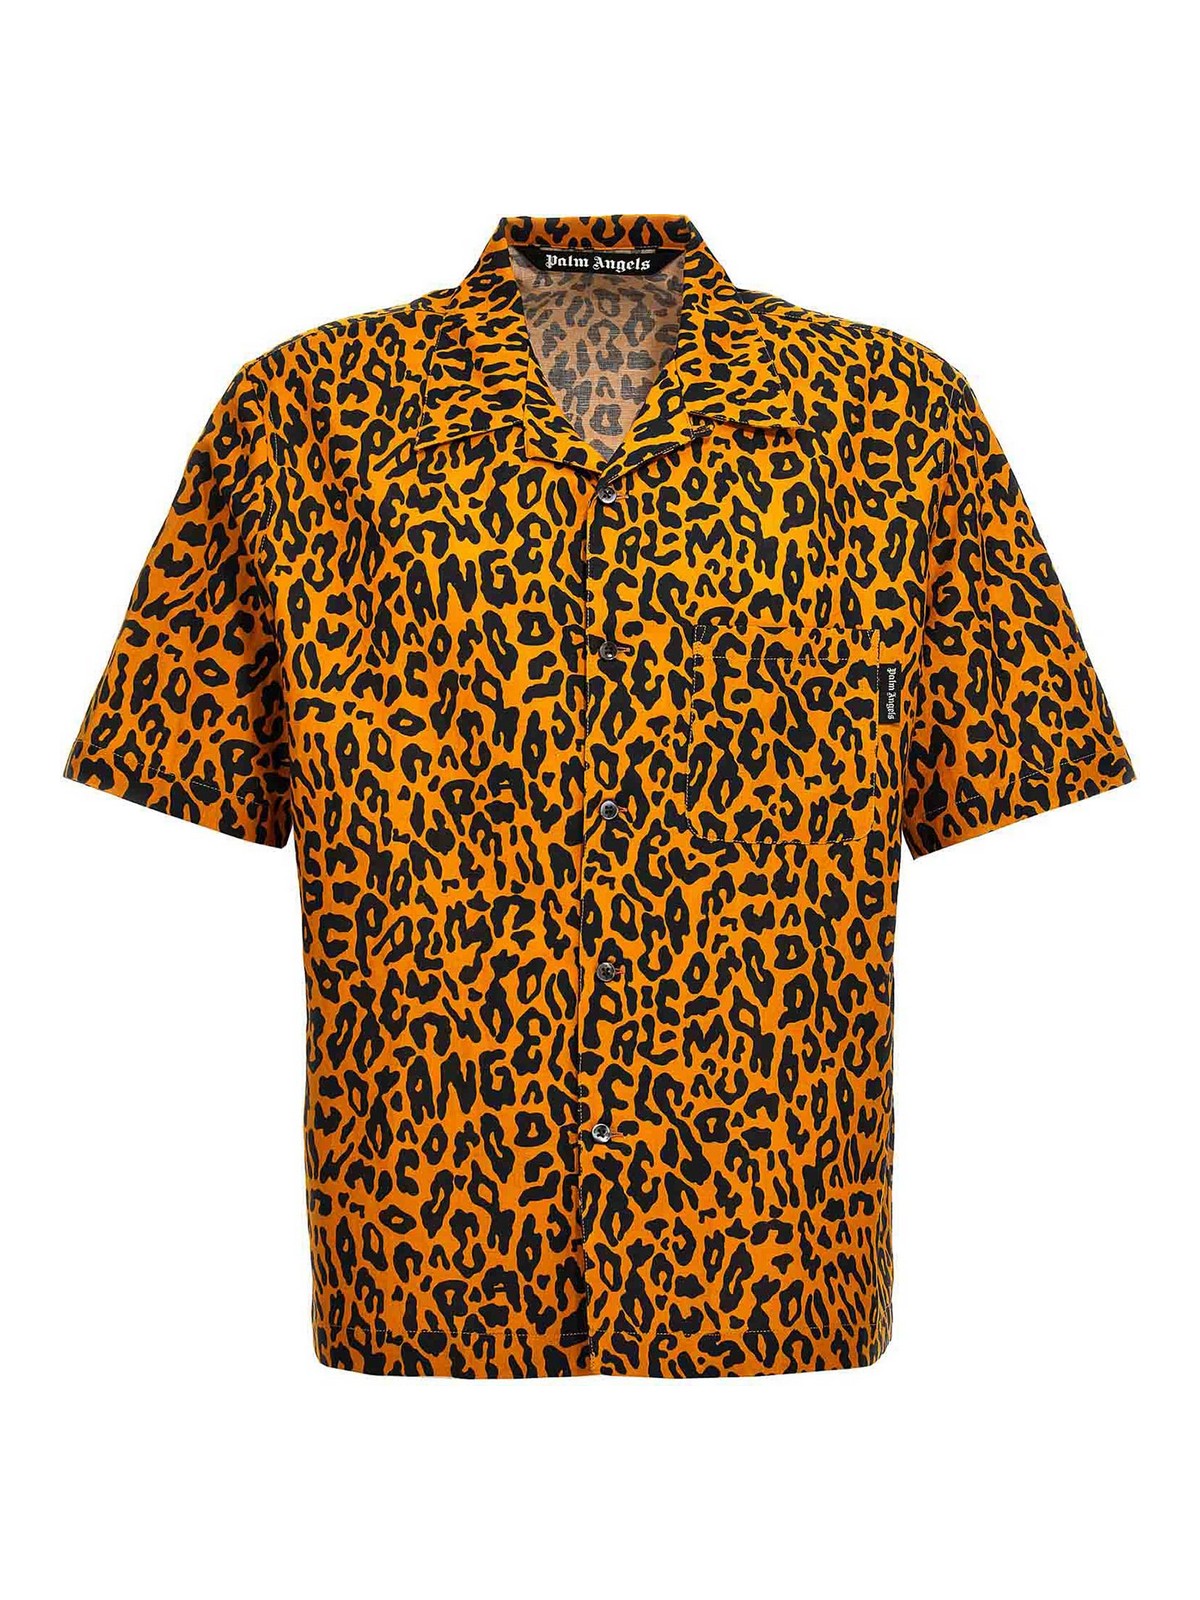 Palm Angels Cheetah Shirt In Multicolour